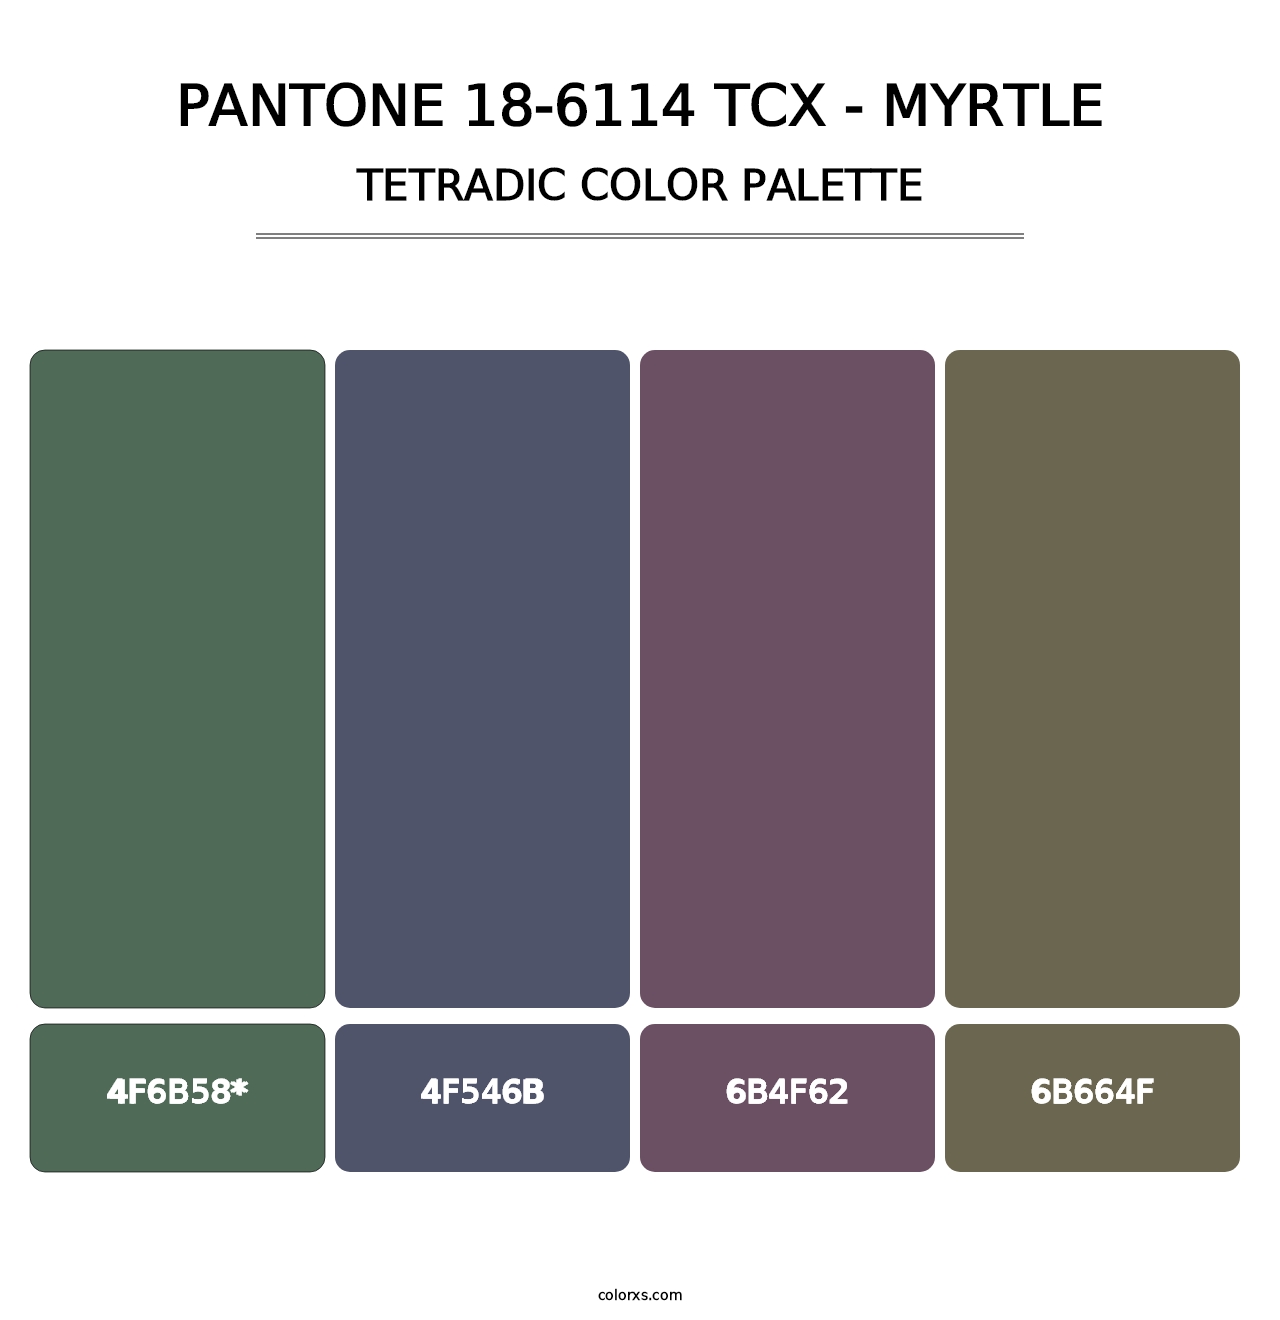 PANTONE 18-6114 TCX - Myrtle - Tetradic Color Palette